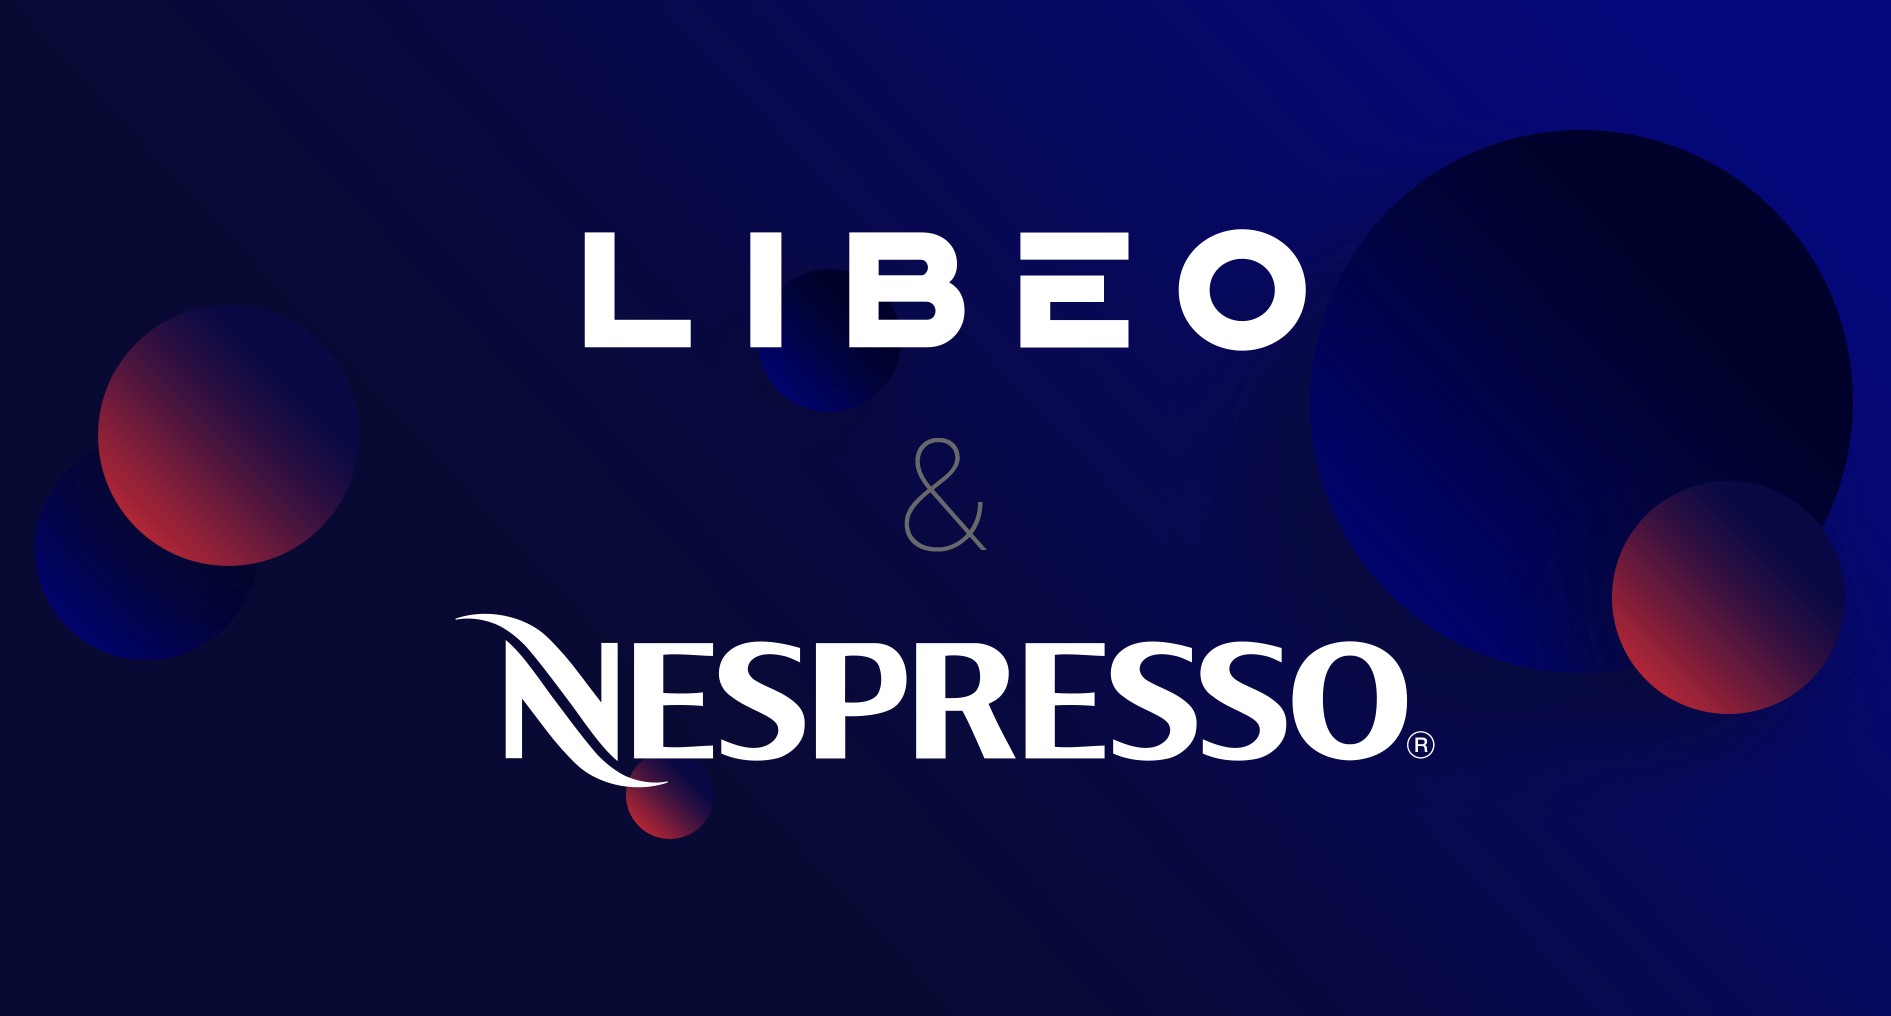 Les logos de Libéo et de Nespresso